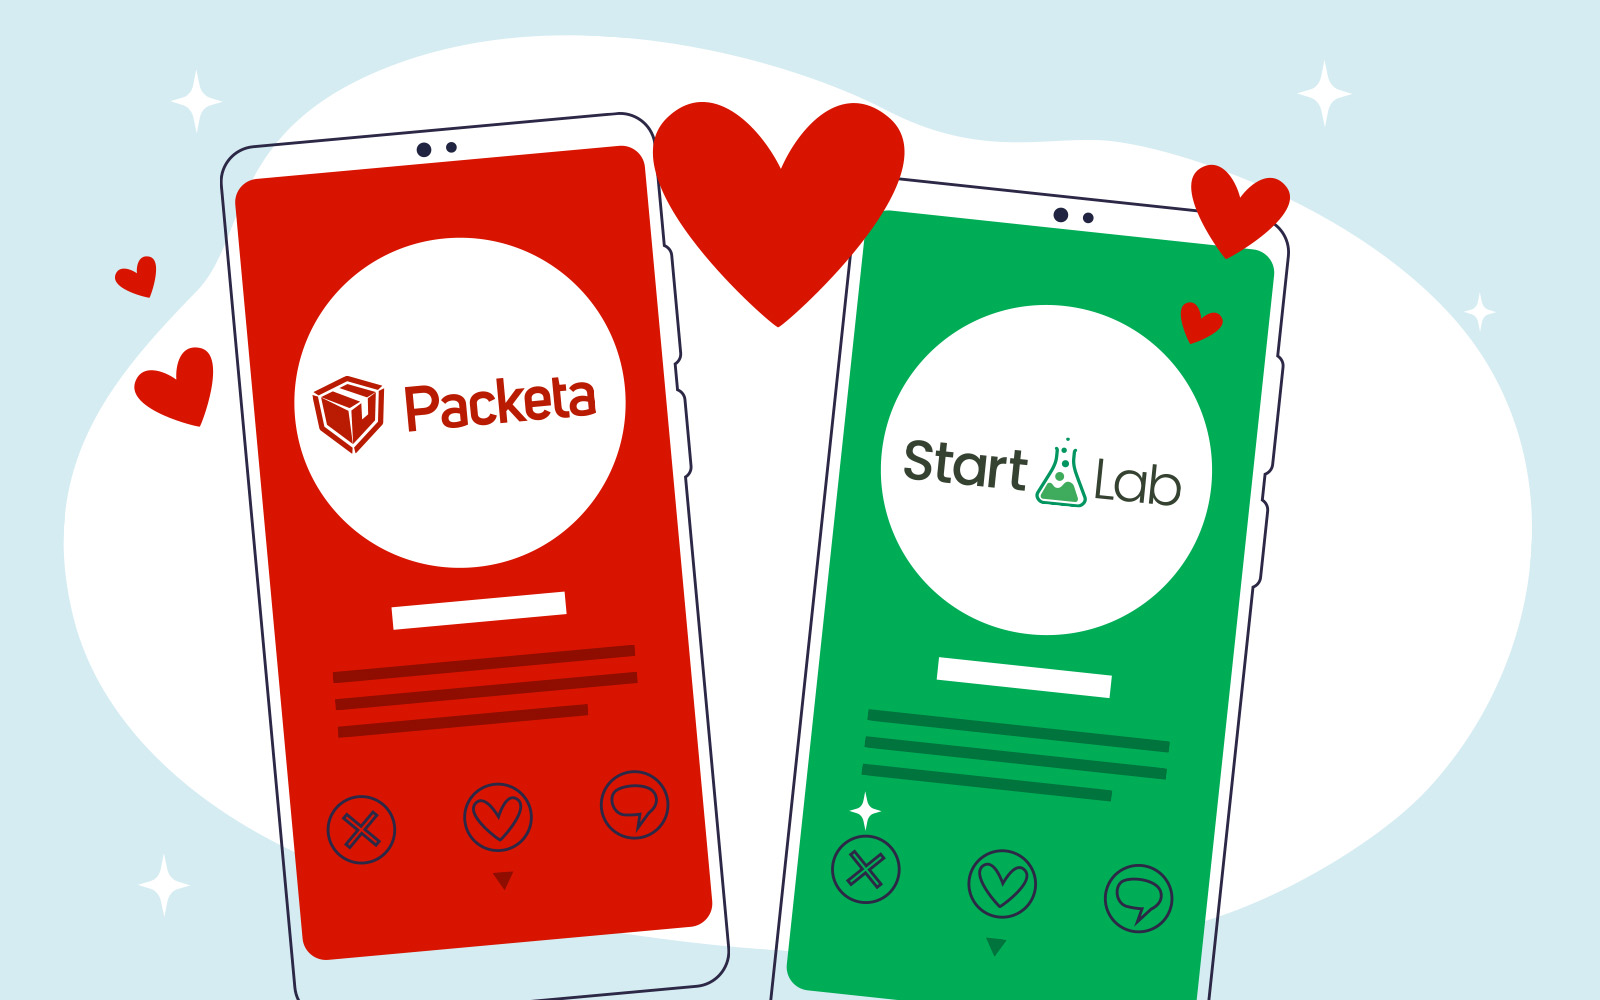 StartLab sa spojil s Packetou: Posielanie odmien po kampani je jednoduchšie a výhodnejšie